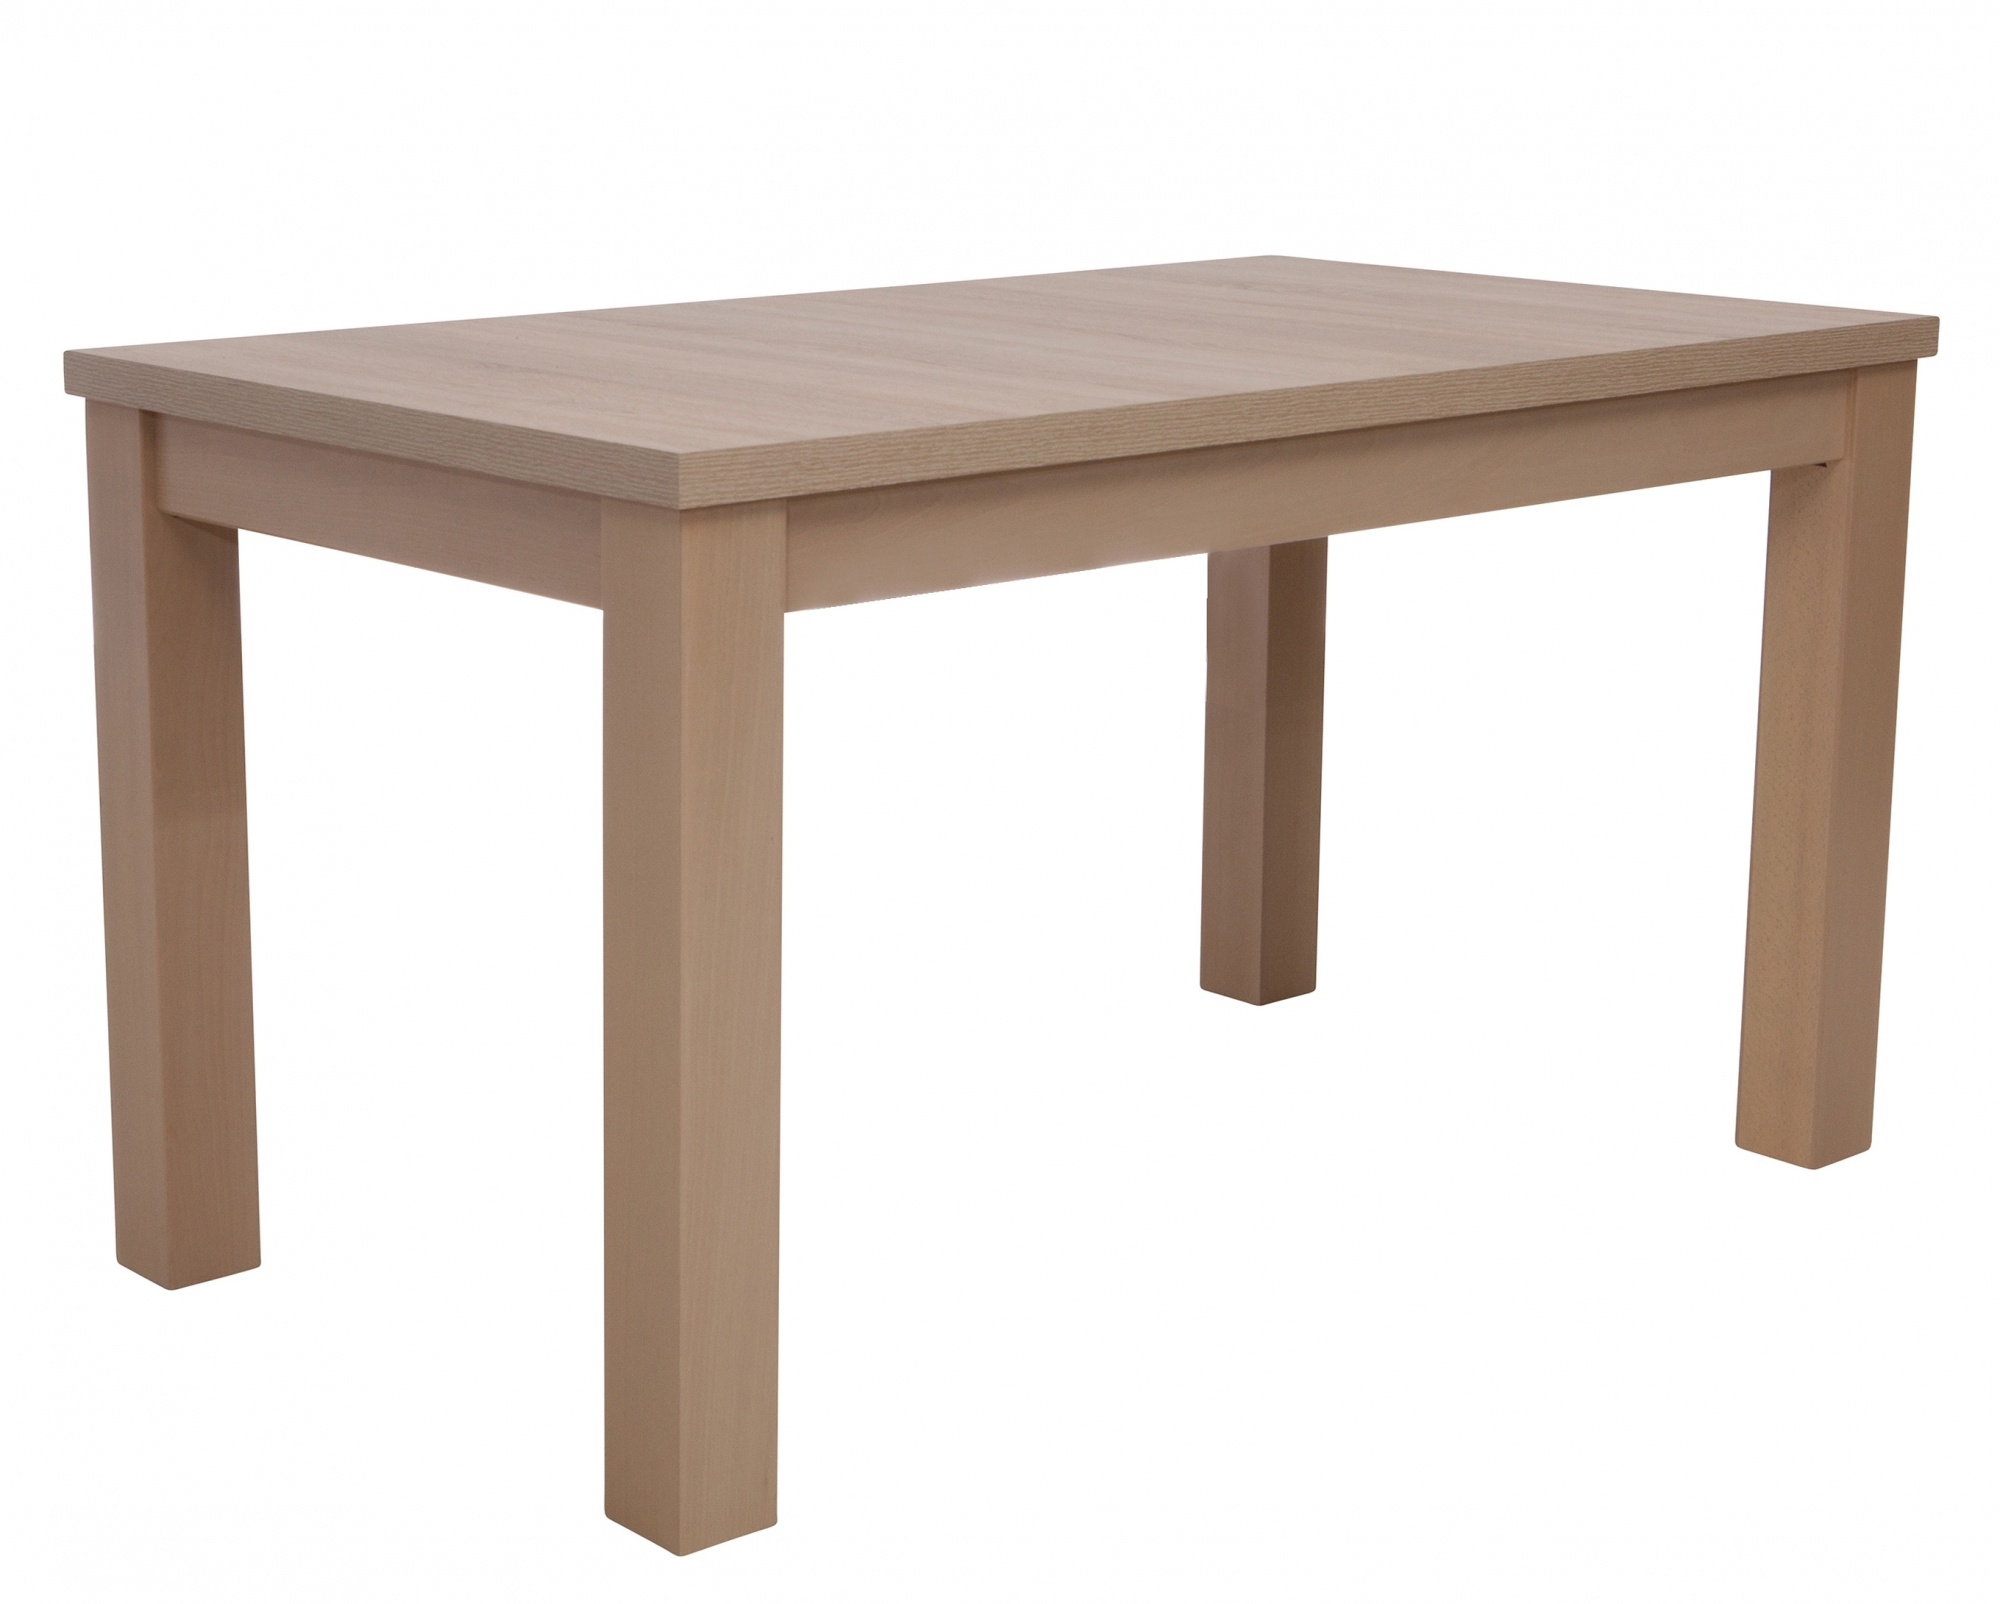 Stół drewniany z blatem fornirowanym do wnętrz gastronomicznych